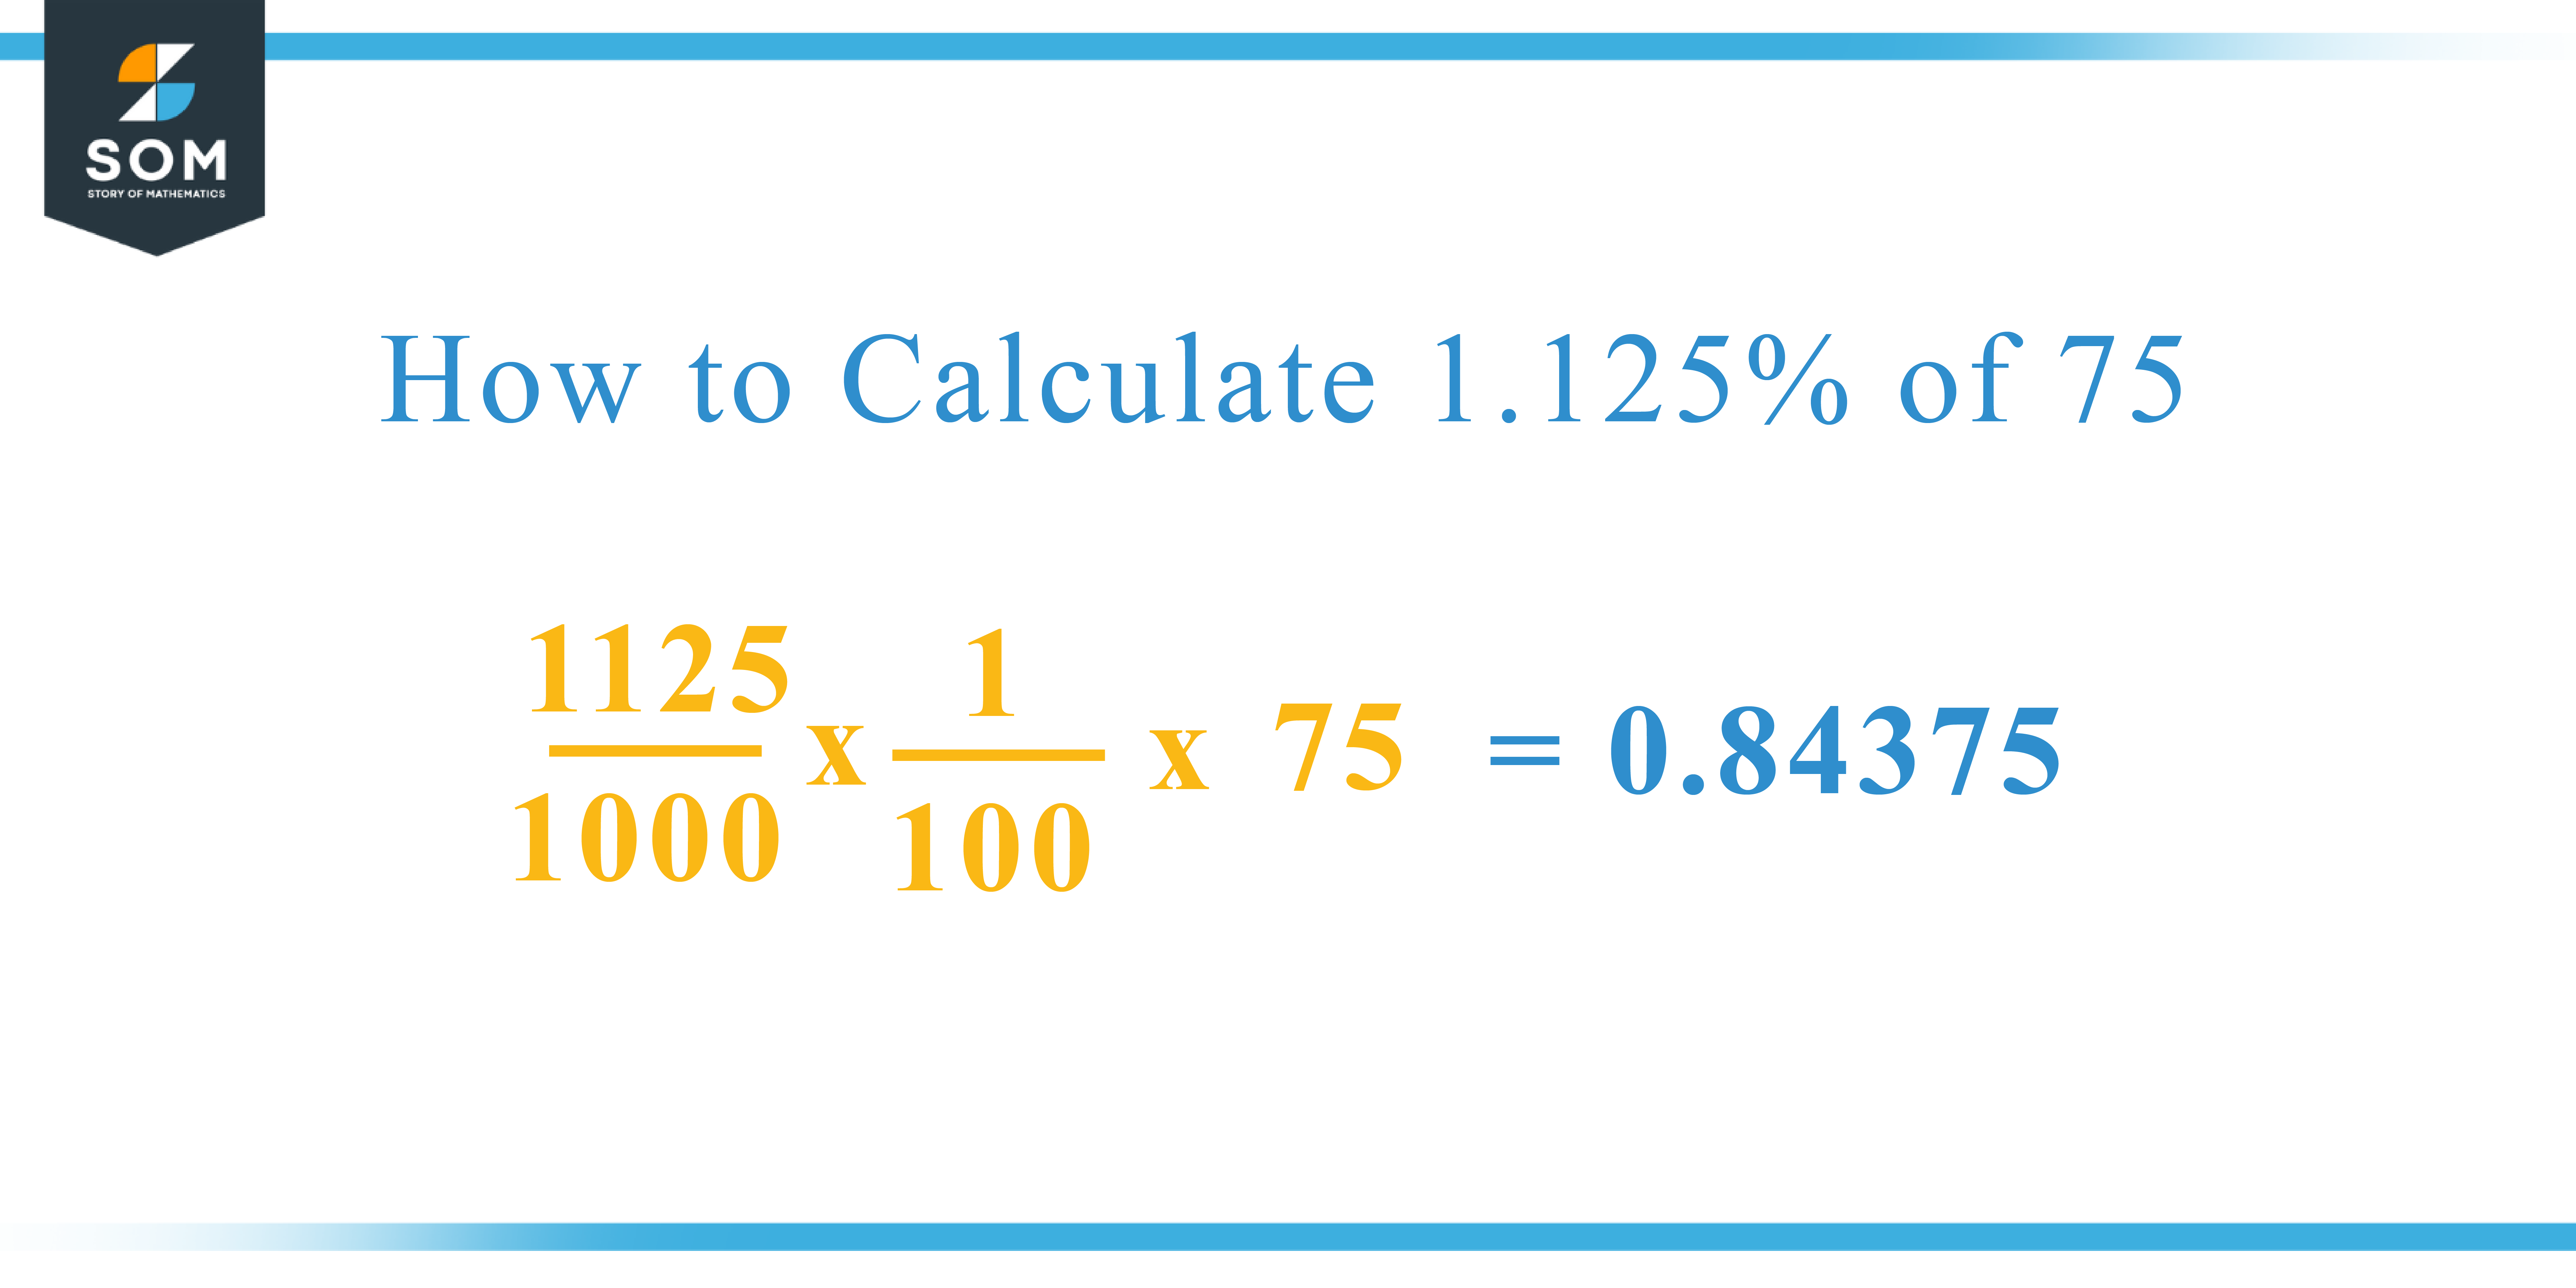 Calculation 1.125 percent of 75